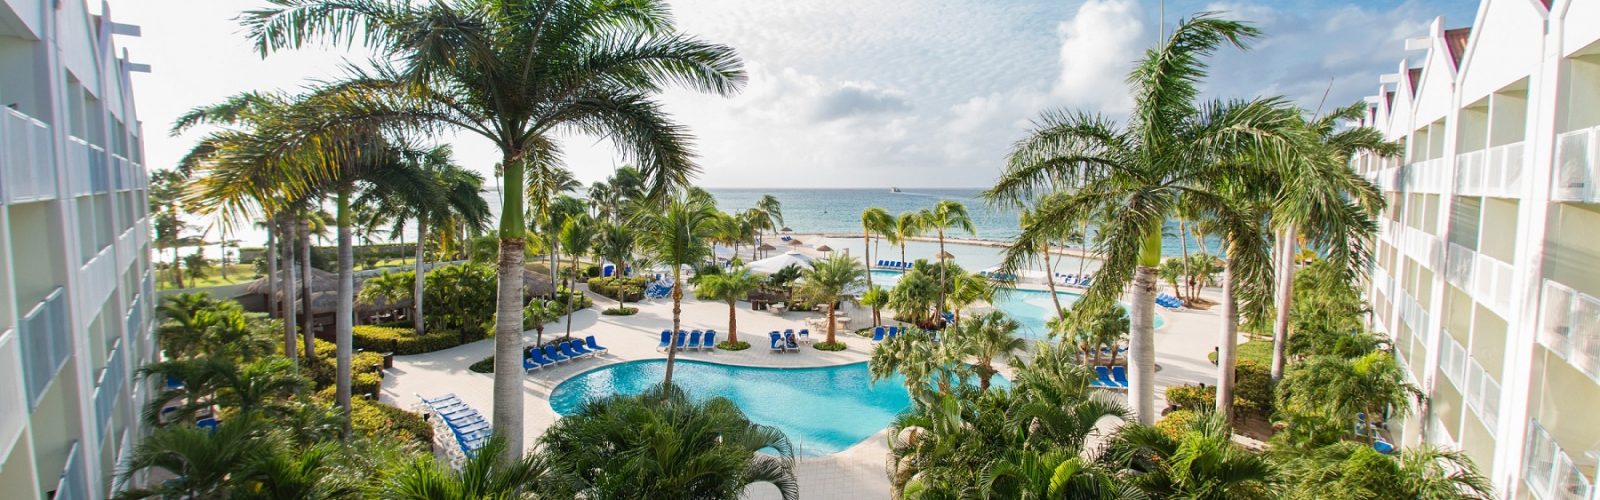 Renaissance Aruba Ocean Suites Floor Plan Part 42 Marriott